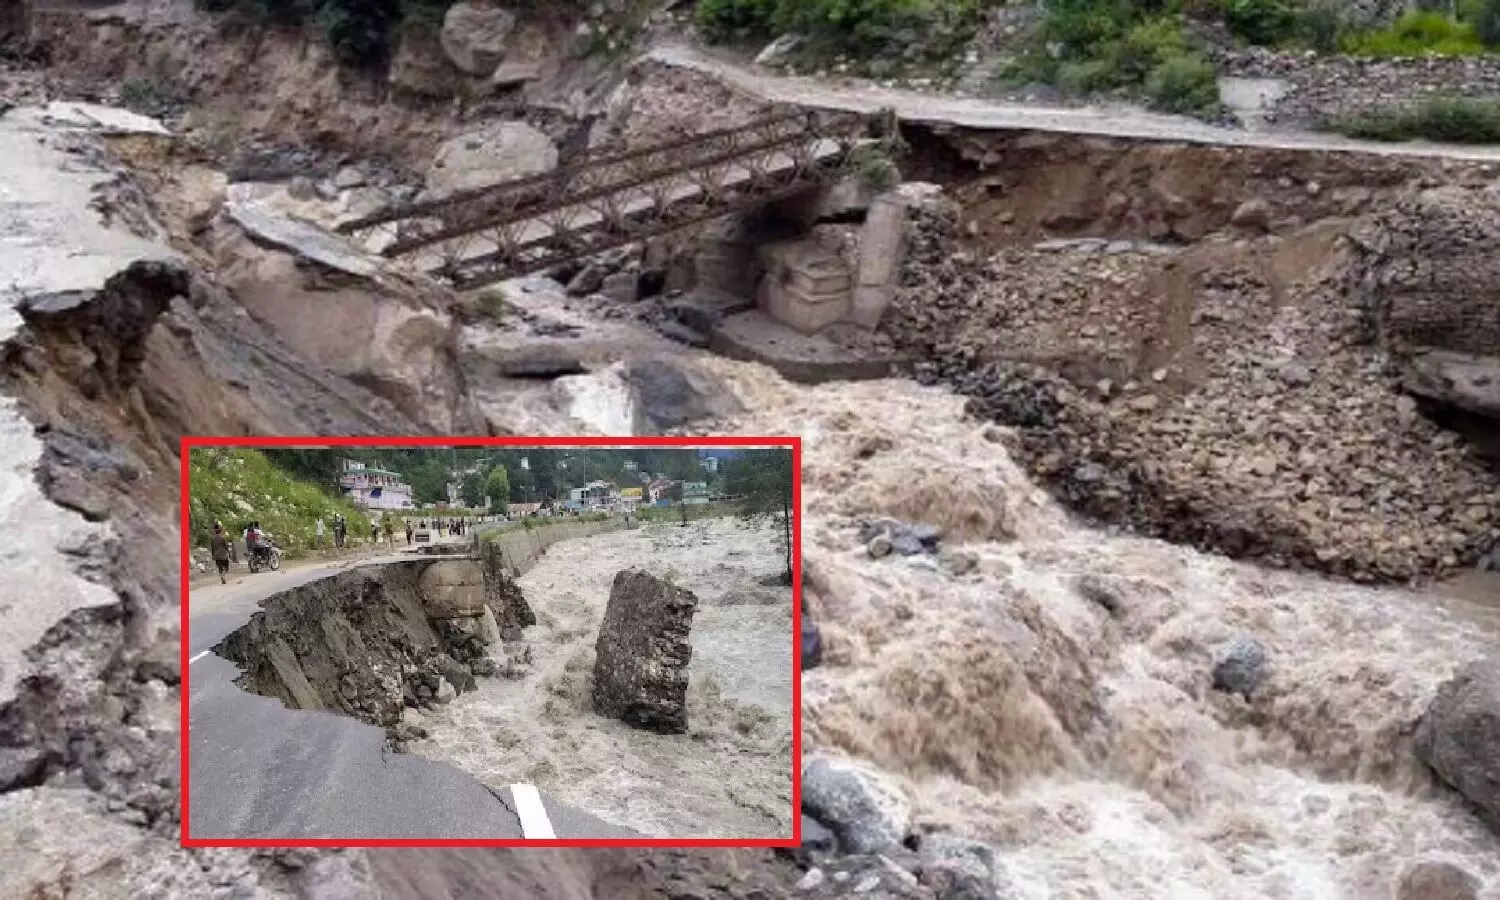 हिमाचल में बाढ़ से जो तबाही मची वह सभी हिमालयी राज्यों में होगा हर बार, क्योंकि यह है मुनाफे की हवस से पैदा हुई आपदा